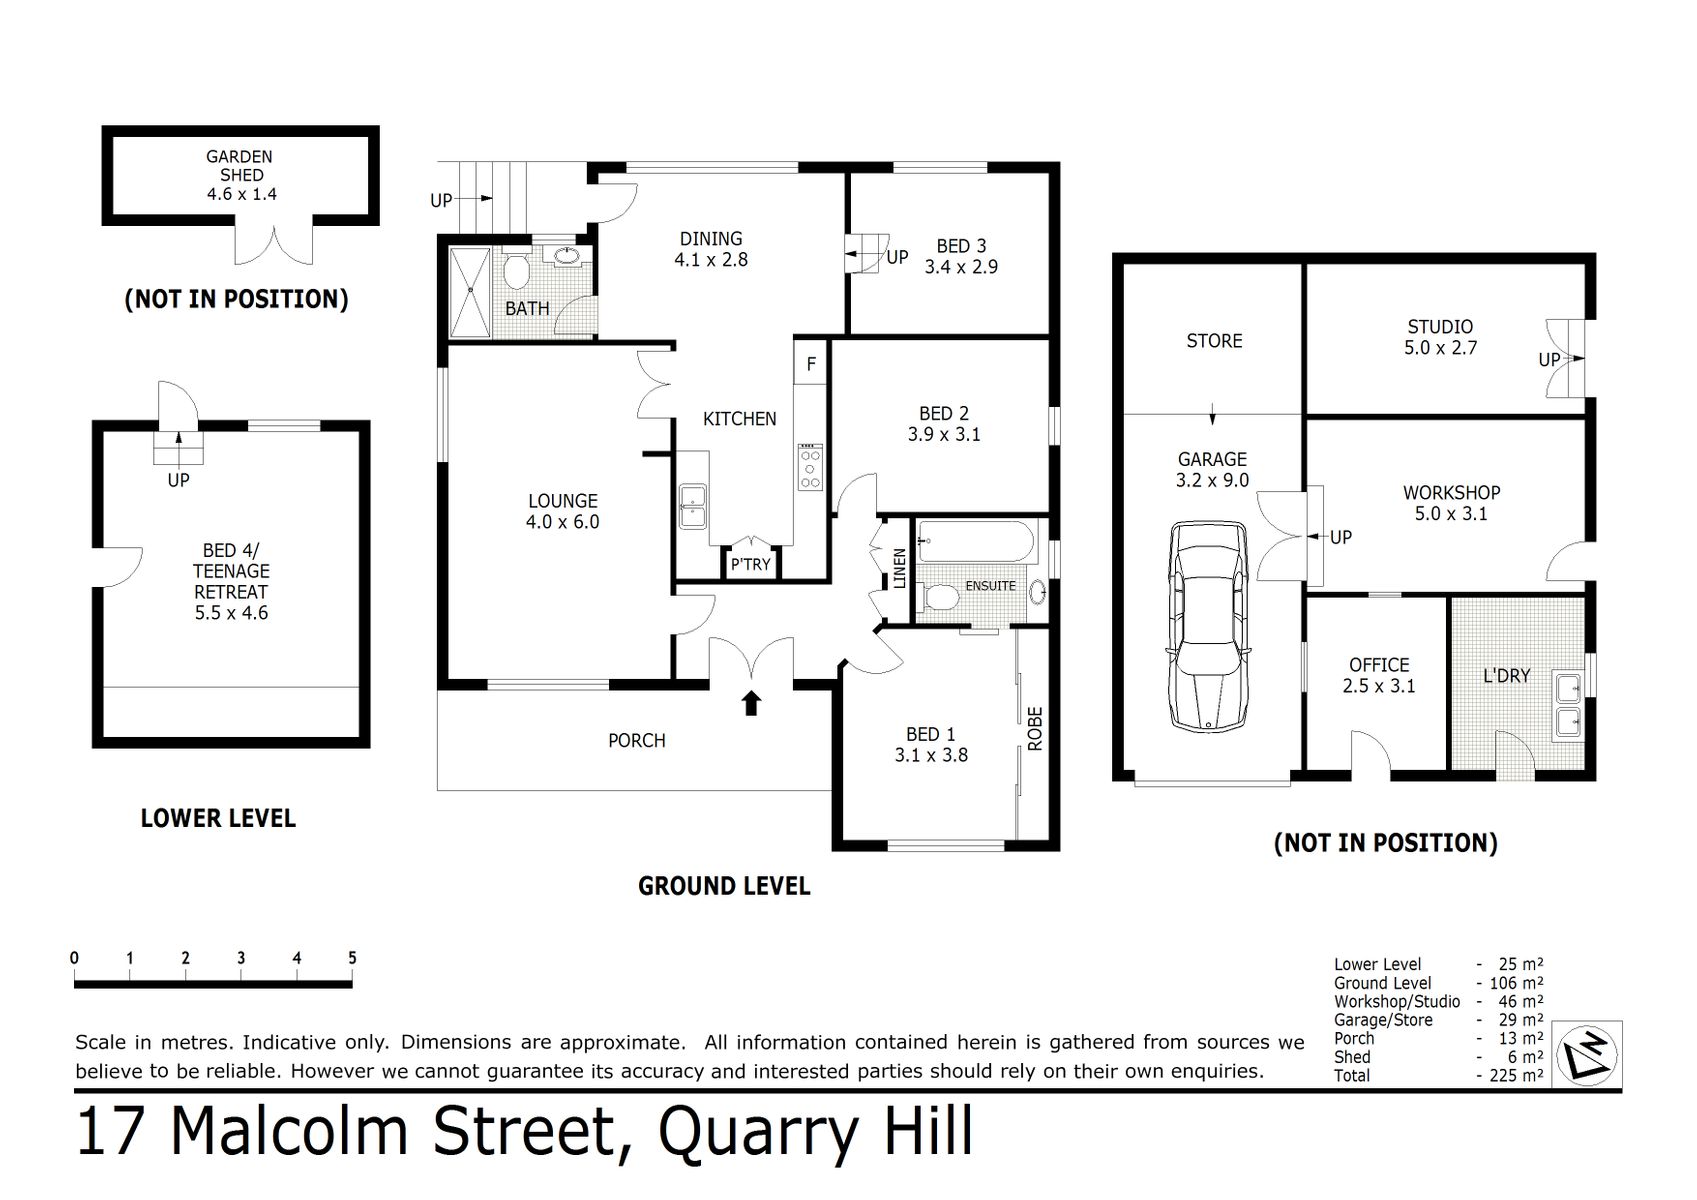 17 Malcolm Street Quarry Hill (20 JUL 2020) 206sqm